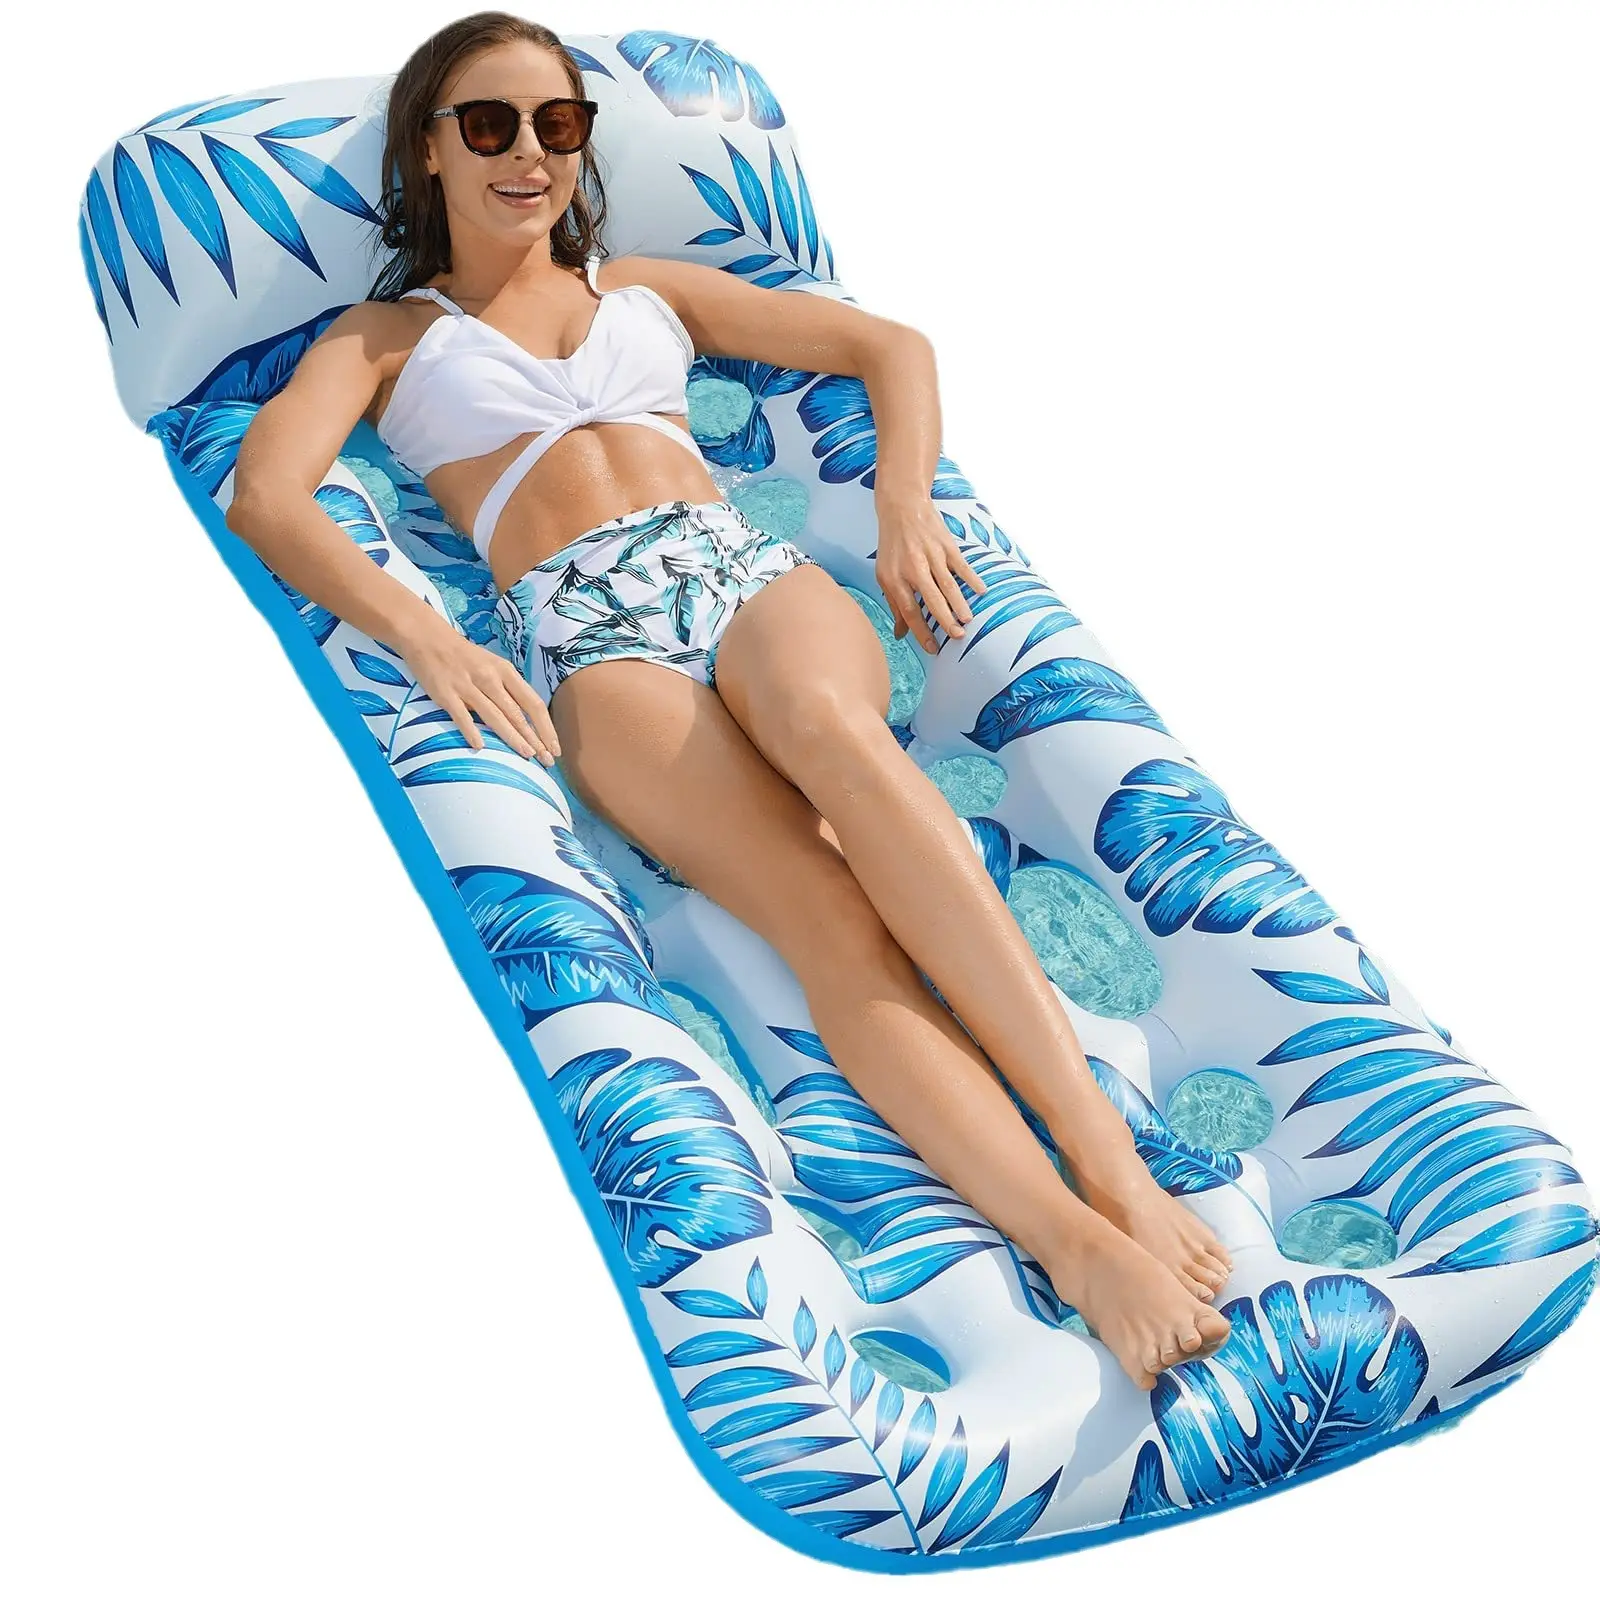 Rede de água de luxo personalizada com guarda-sol para adultos, cama flutuante para natação, espreguiçadeira inflável para baratas e piscina